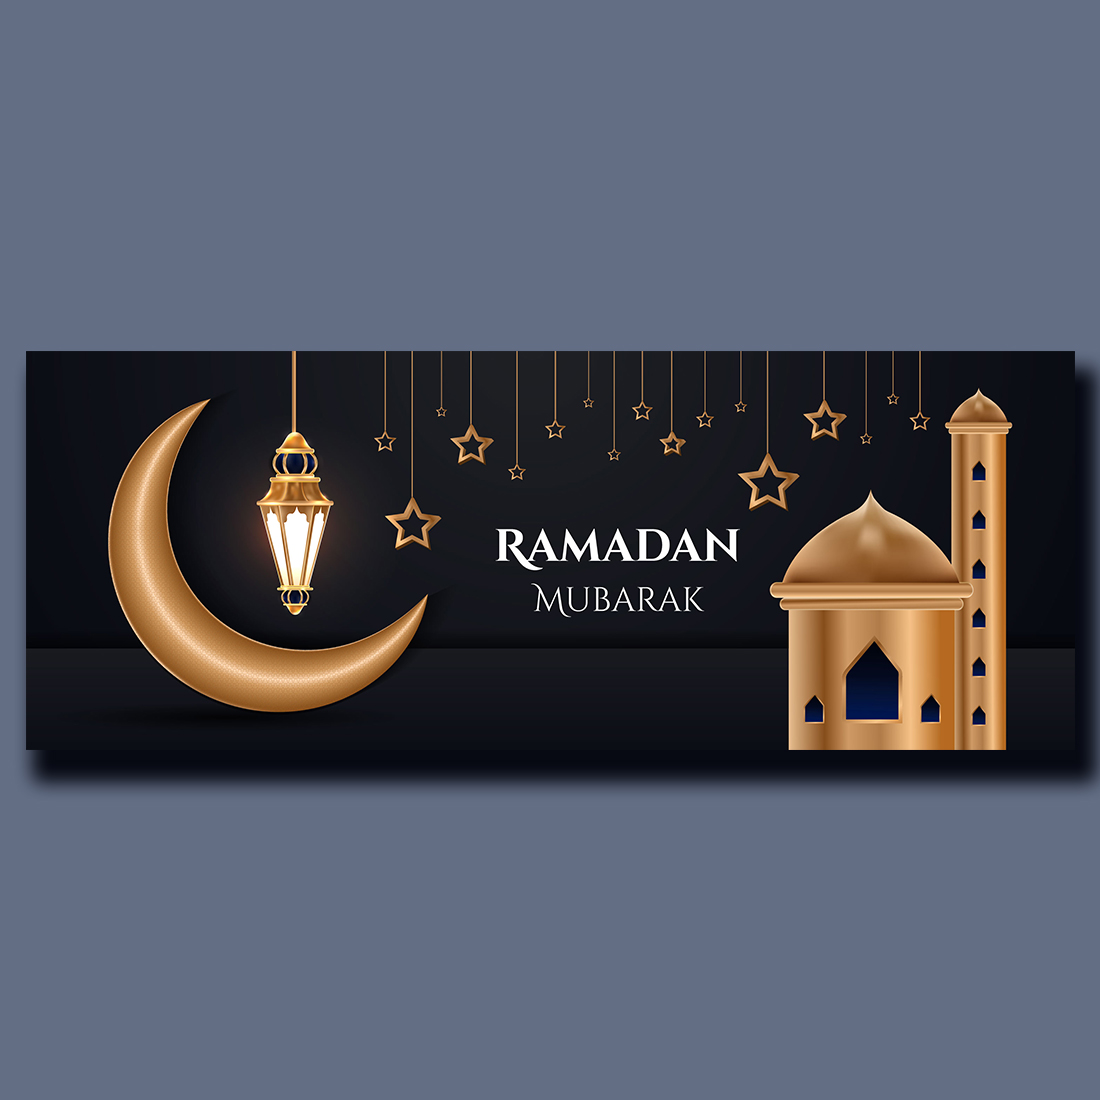 Ramadan Mubarak Greetings Social Media Cover preview image.